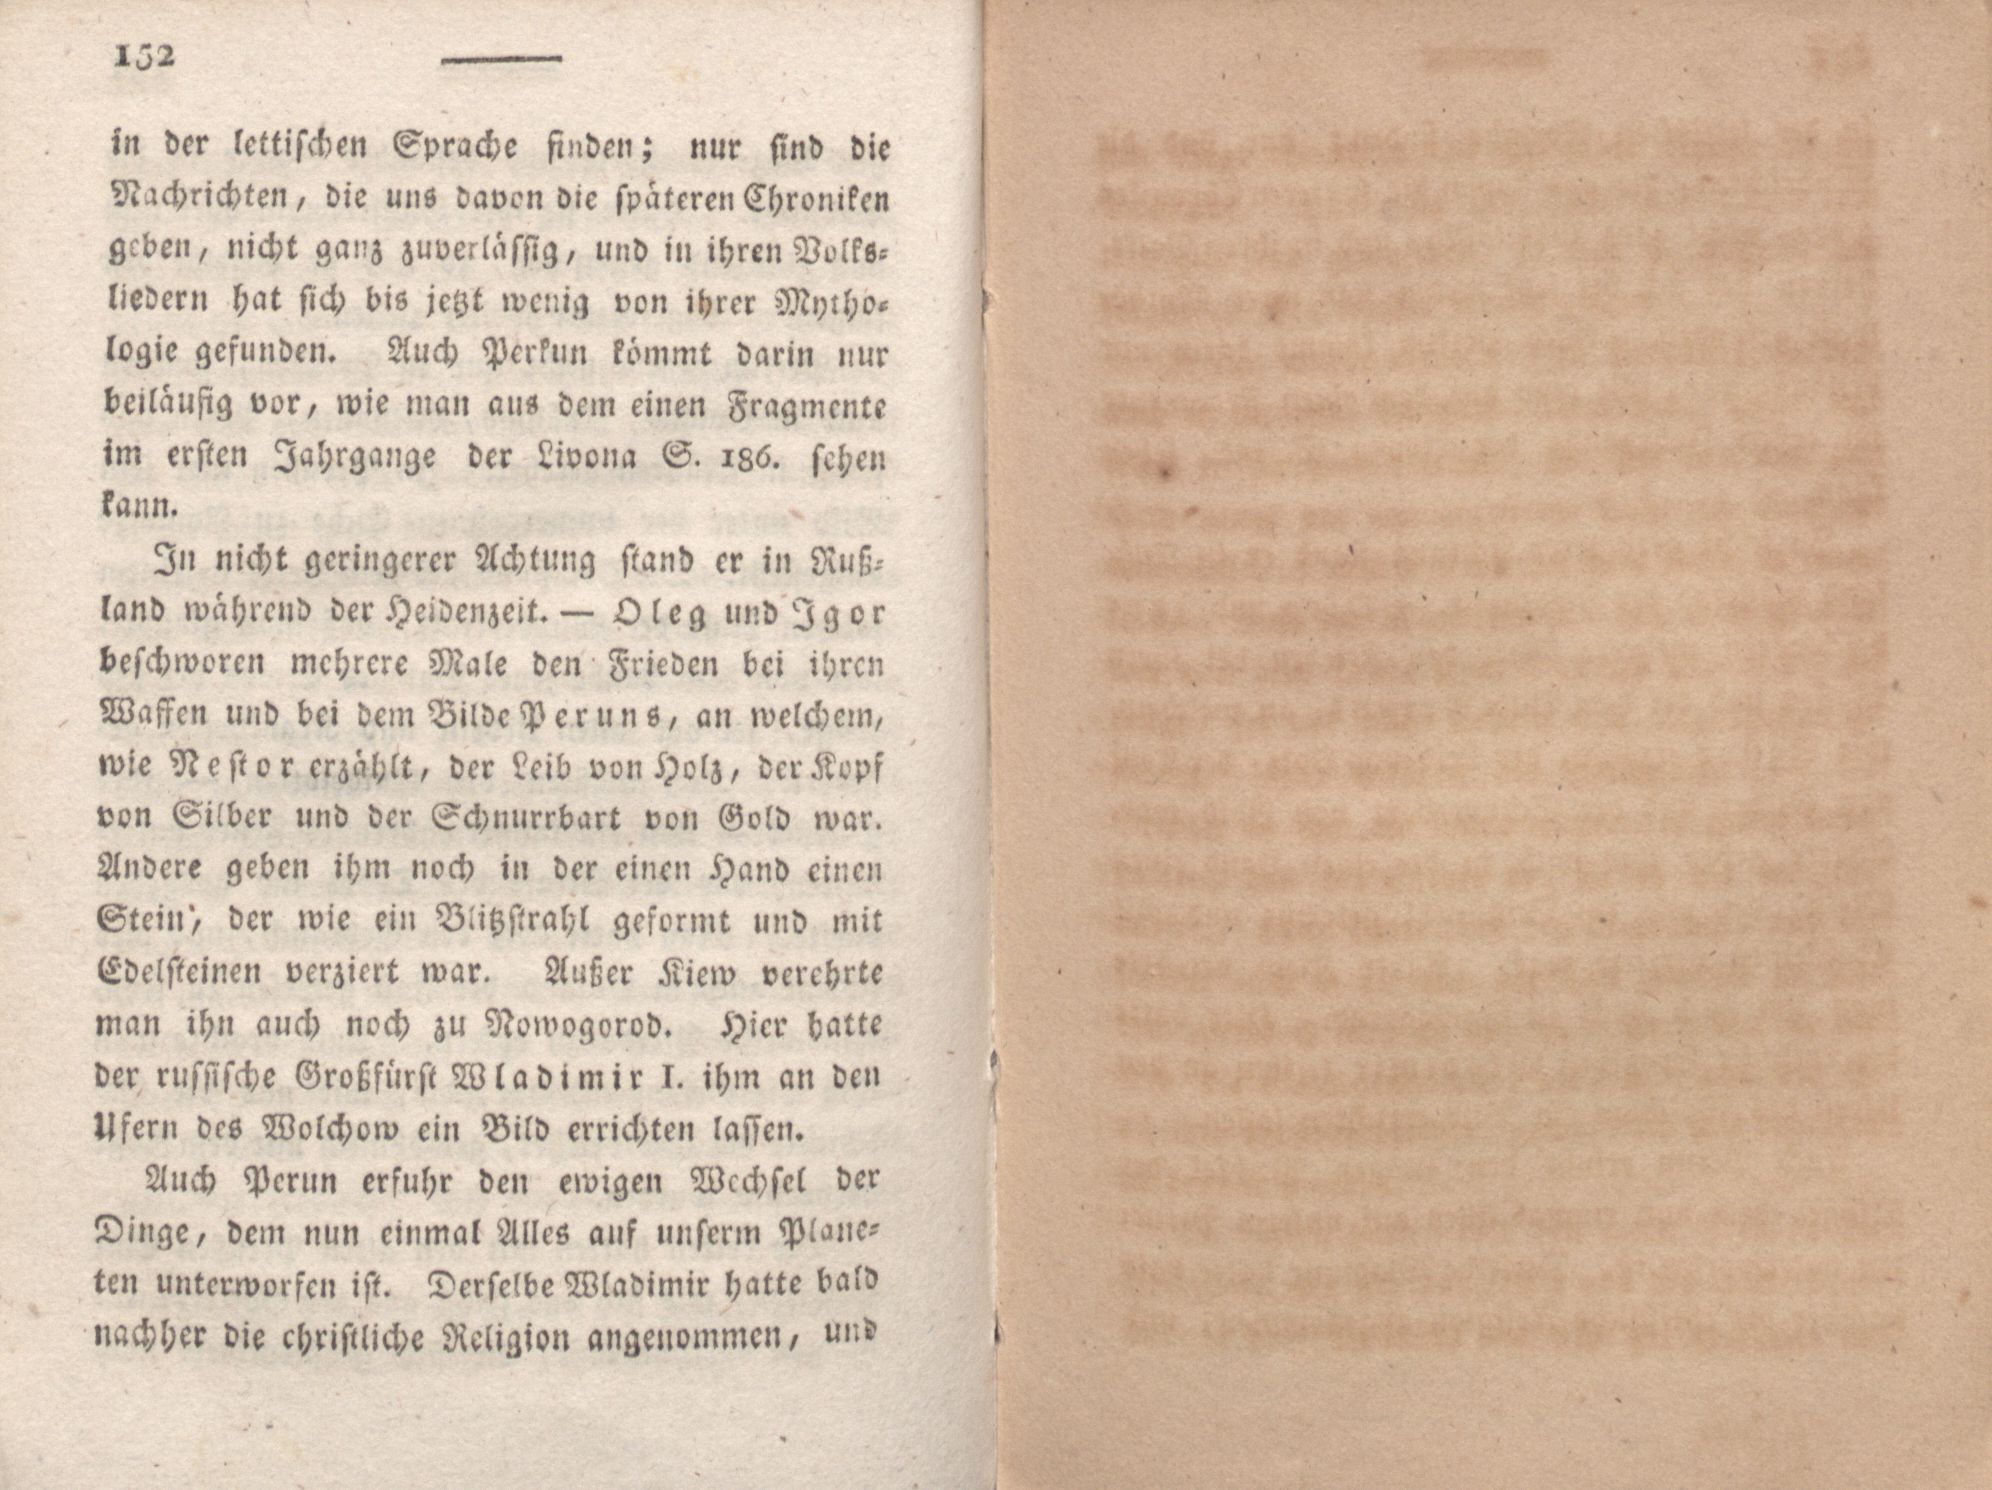 Livona [2] (1815) | 97. (152) Main body of text